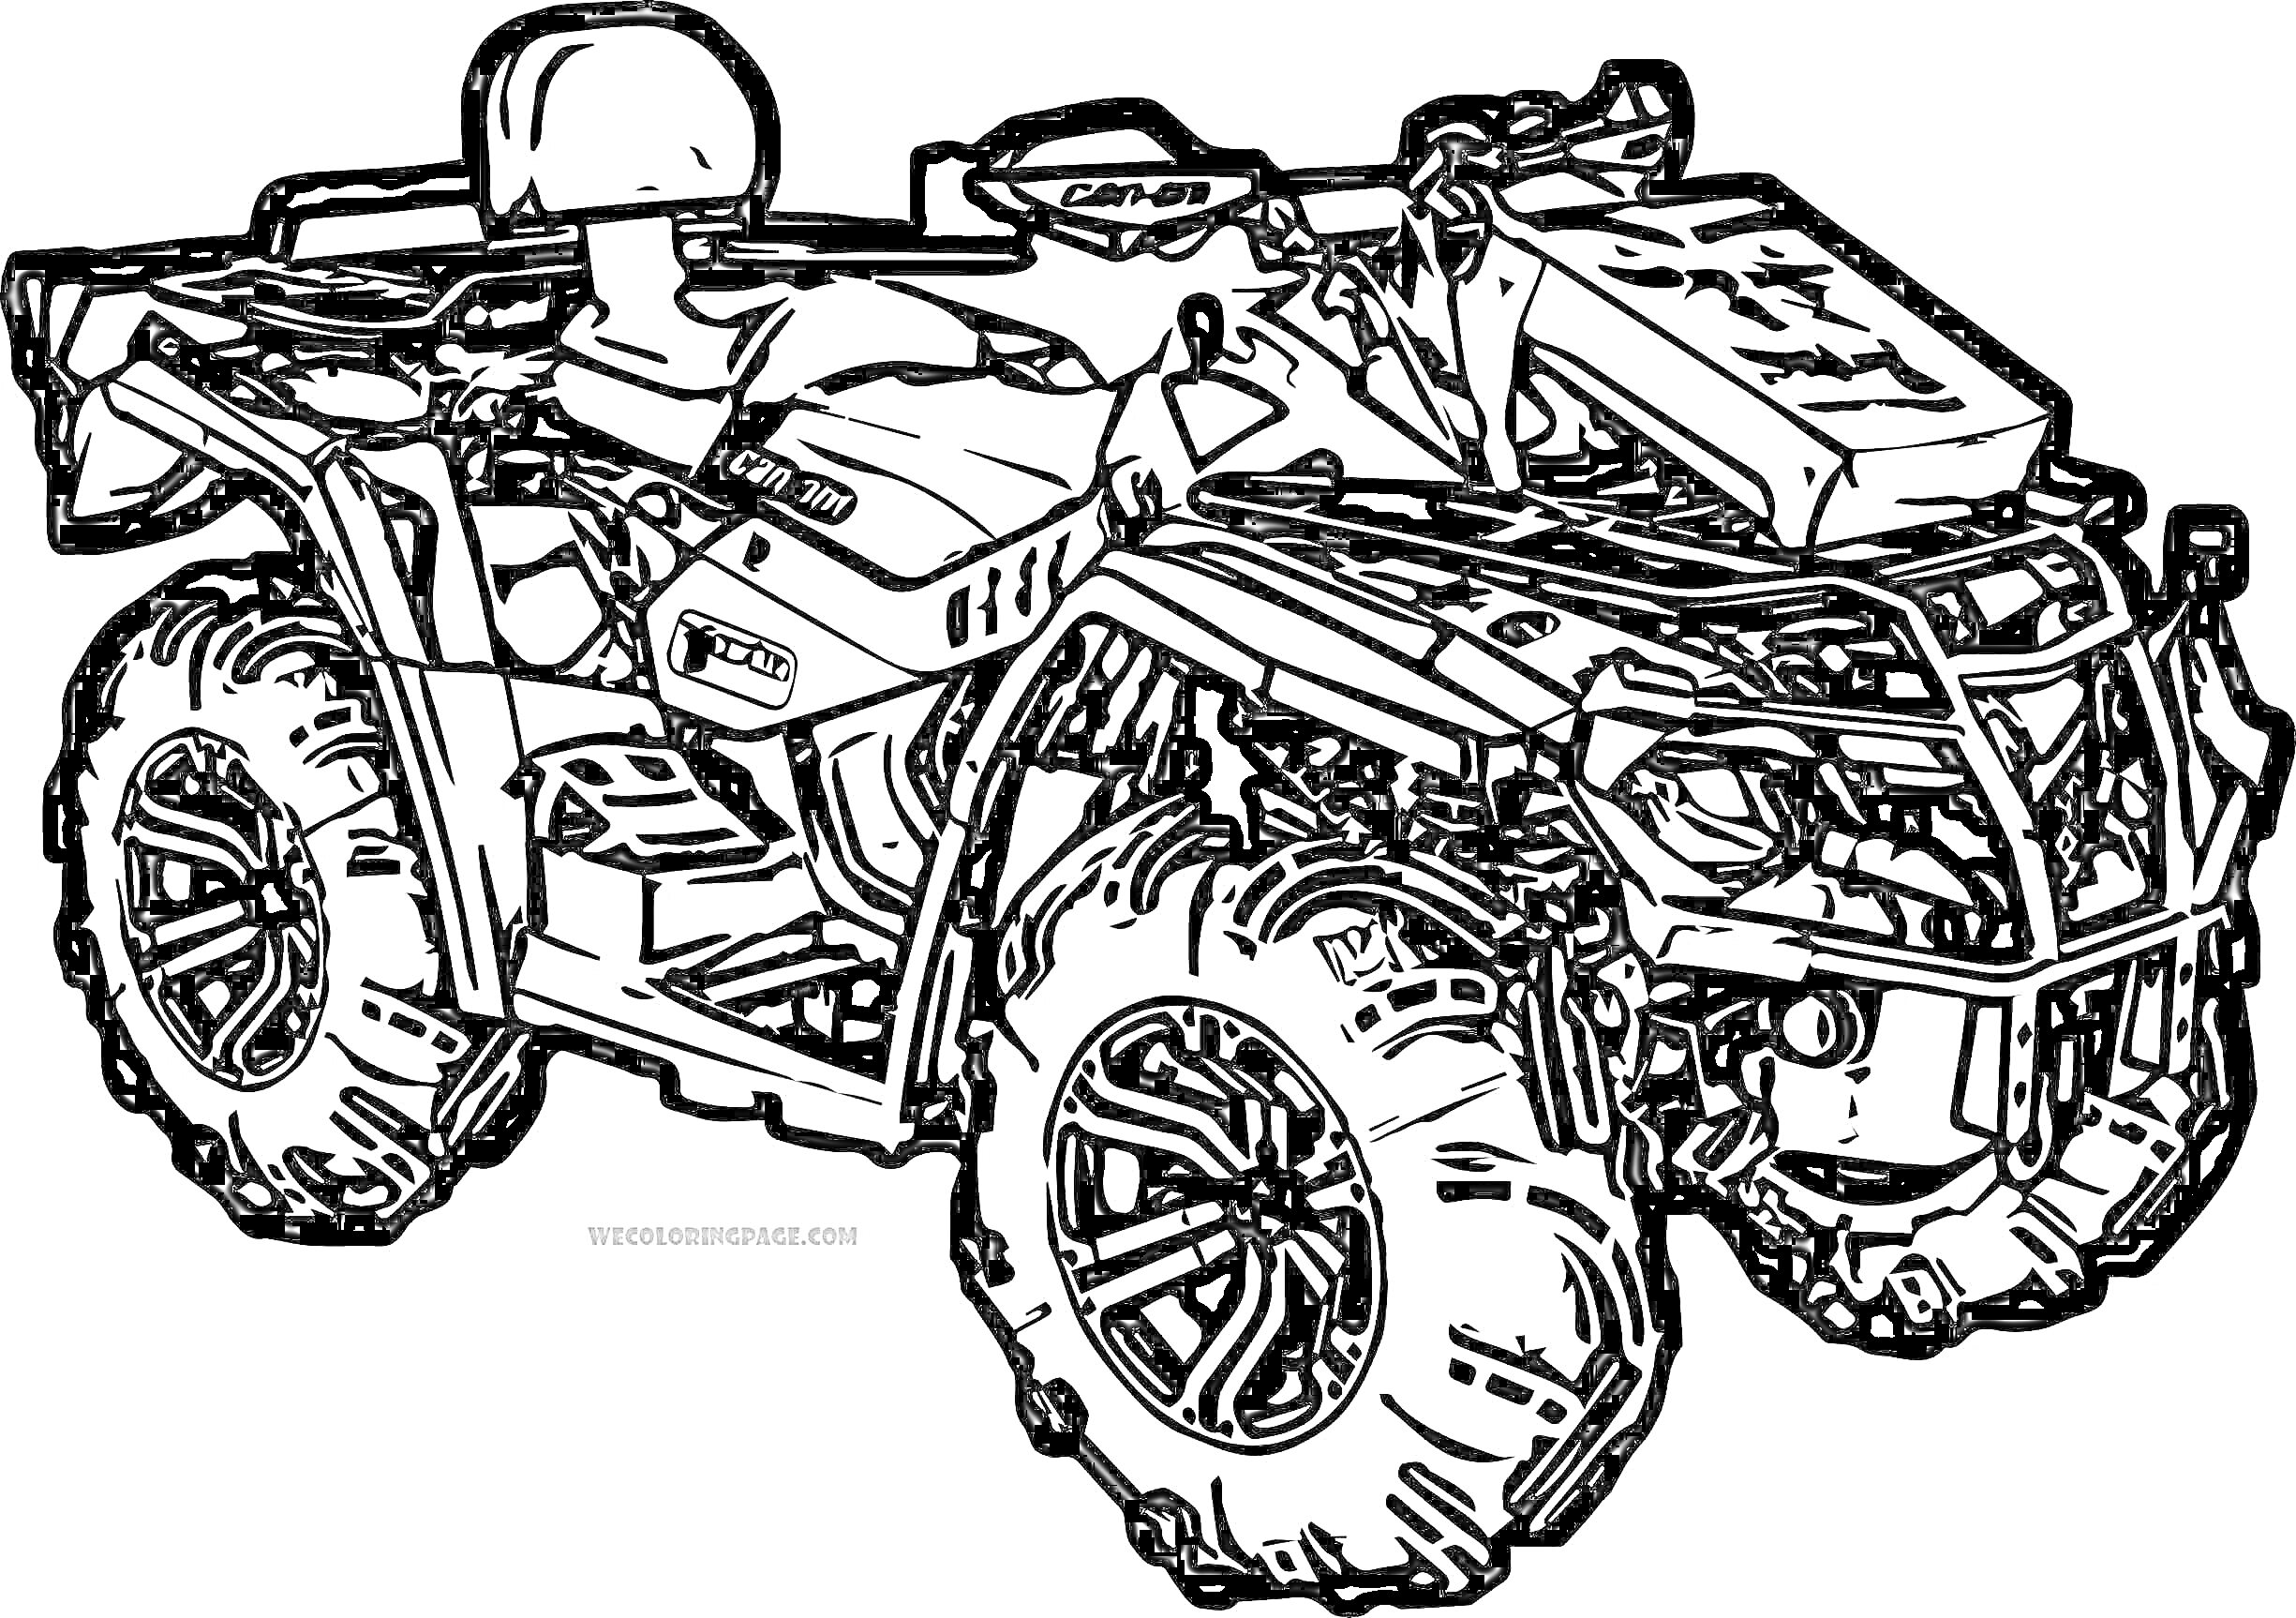 Раскраска Квадрик с деталями - шлем, большие колеса, защита передней части, сиденье, руль, задний багажник